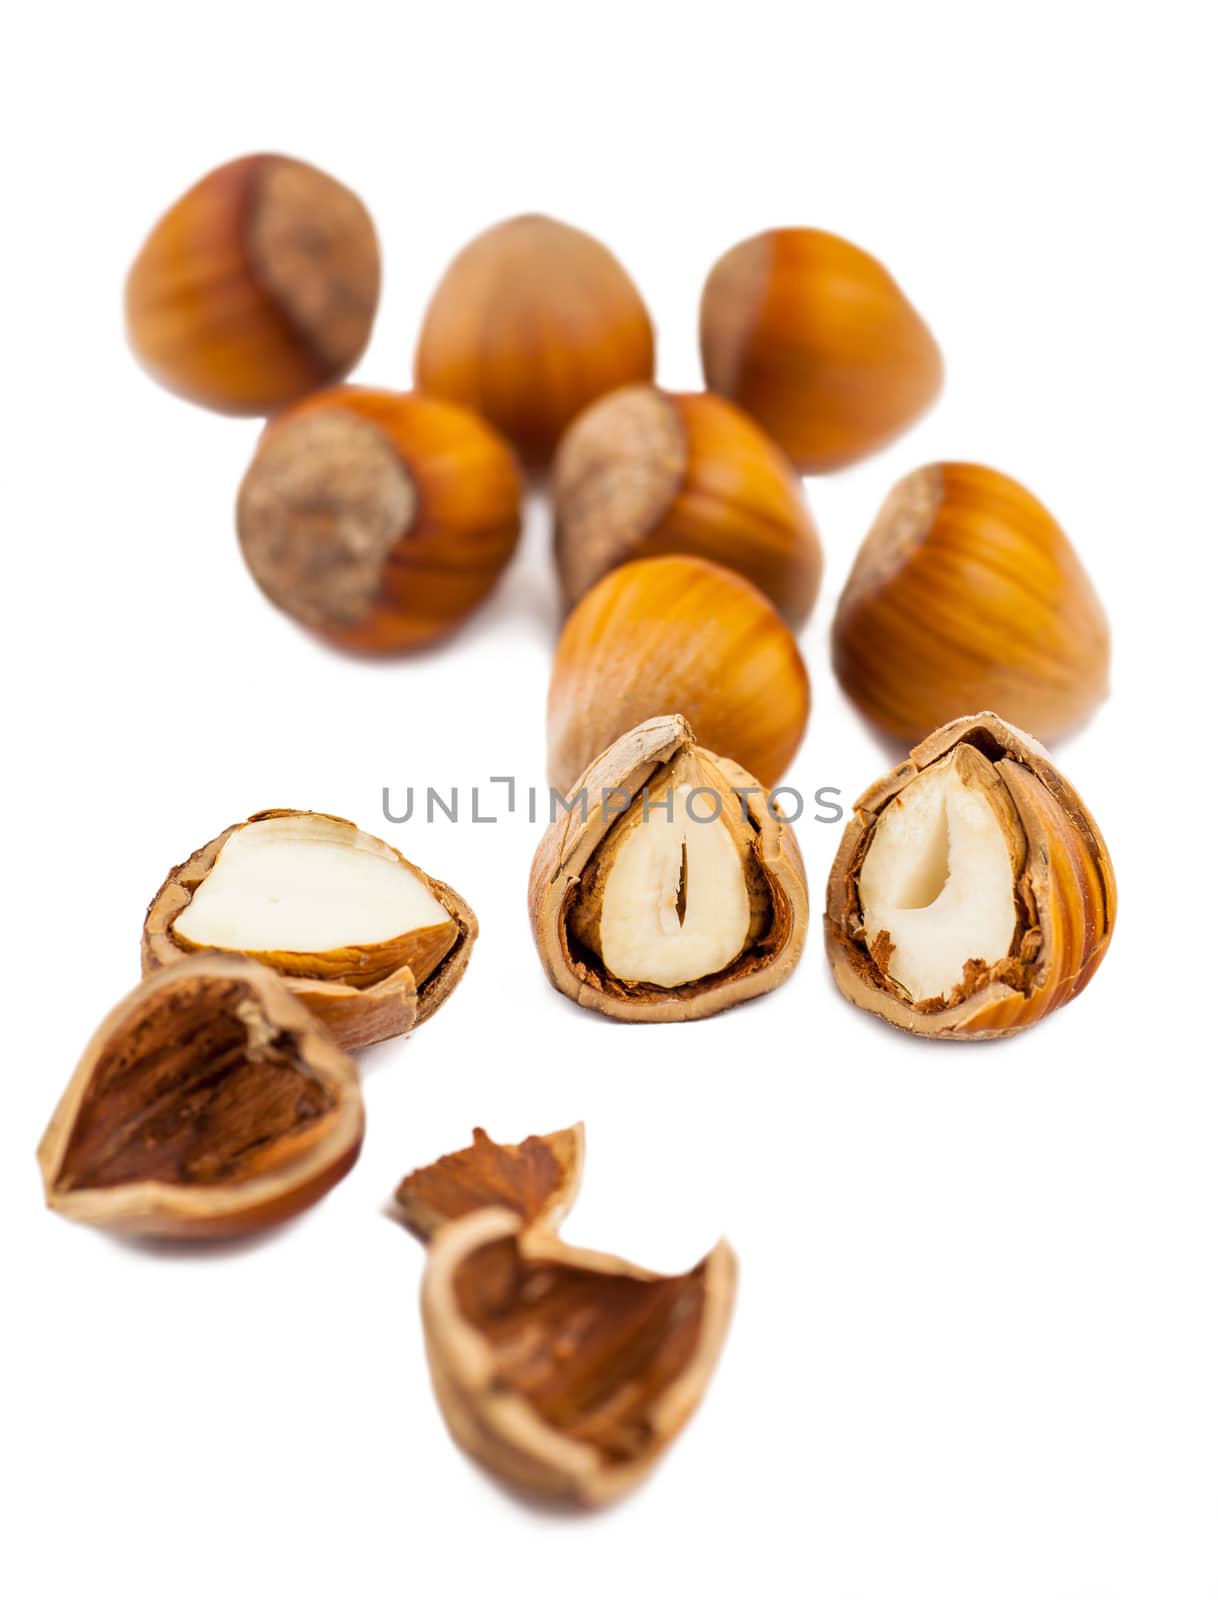 whole and split hazelnuts isolated on white background